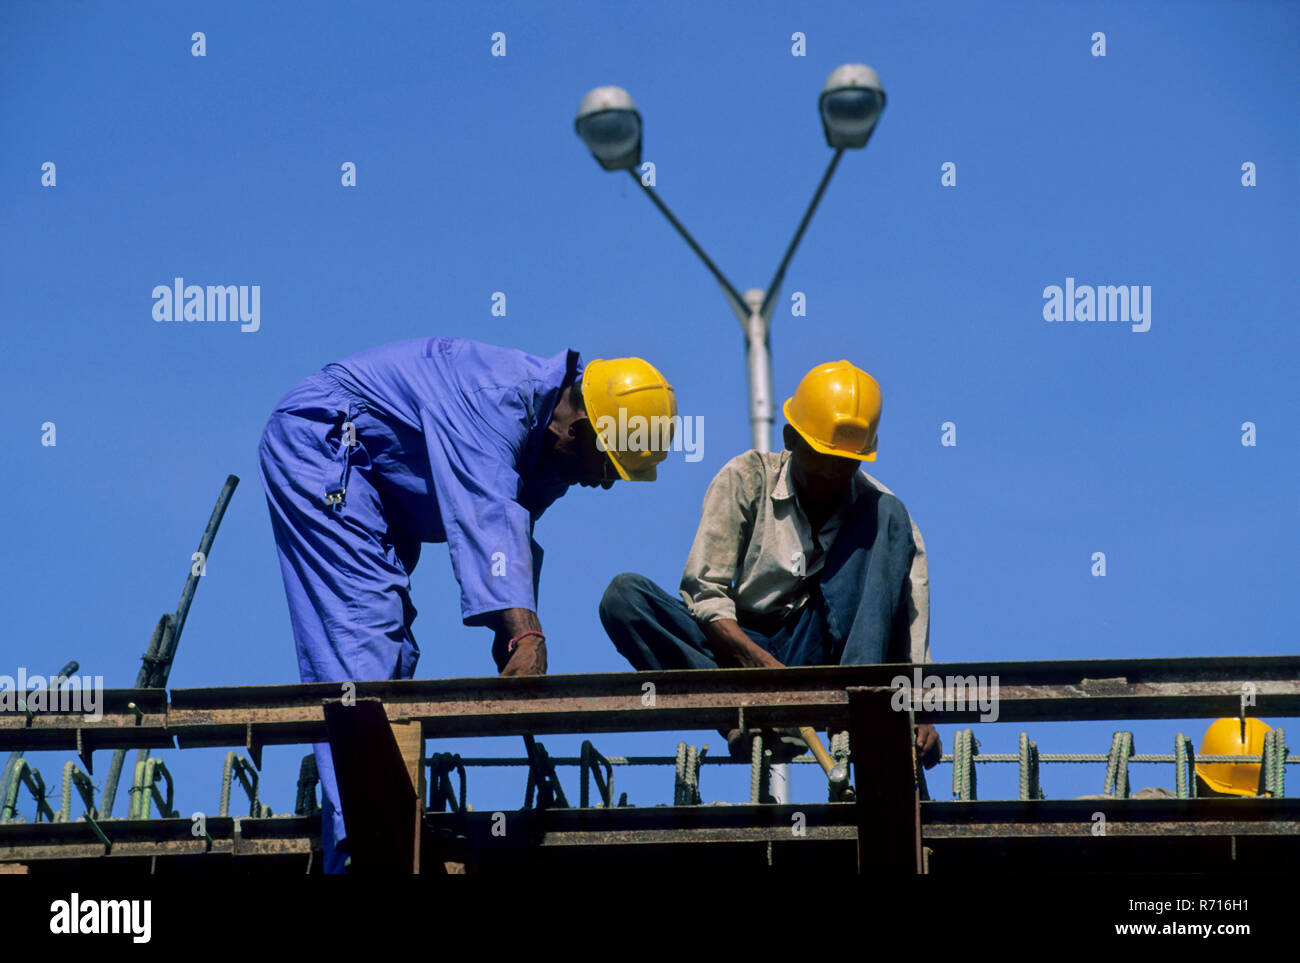 Gli uomini la costruzione di volare oltre a worli, Mumbai Bombay, Maharashtra, India Foto Stock